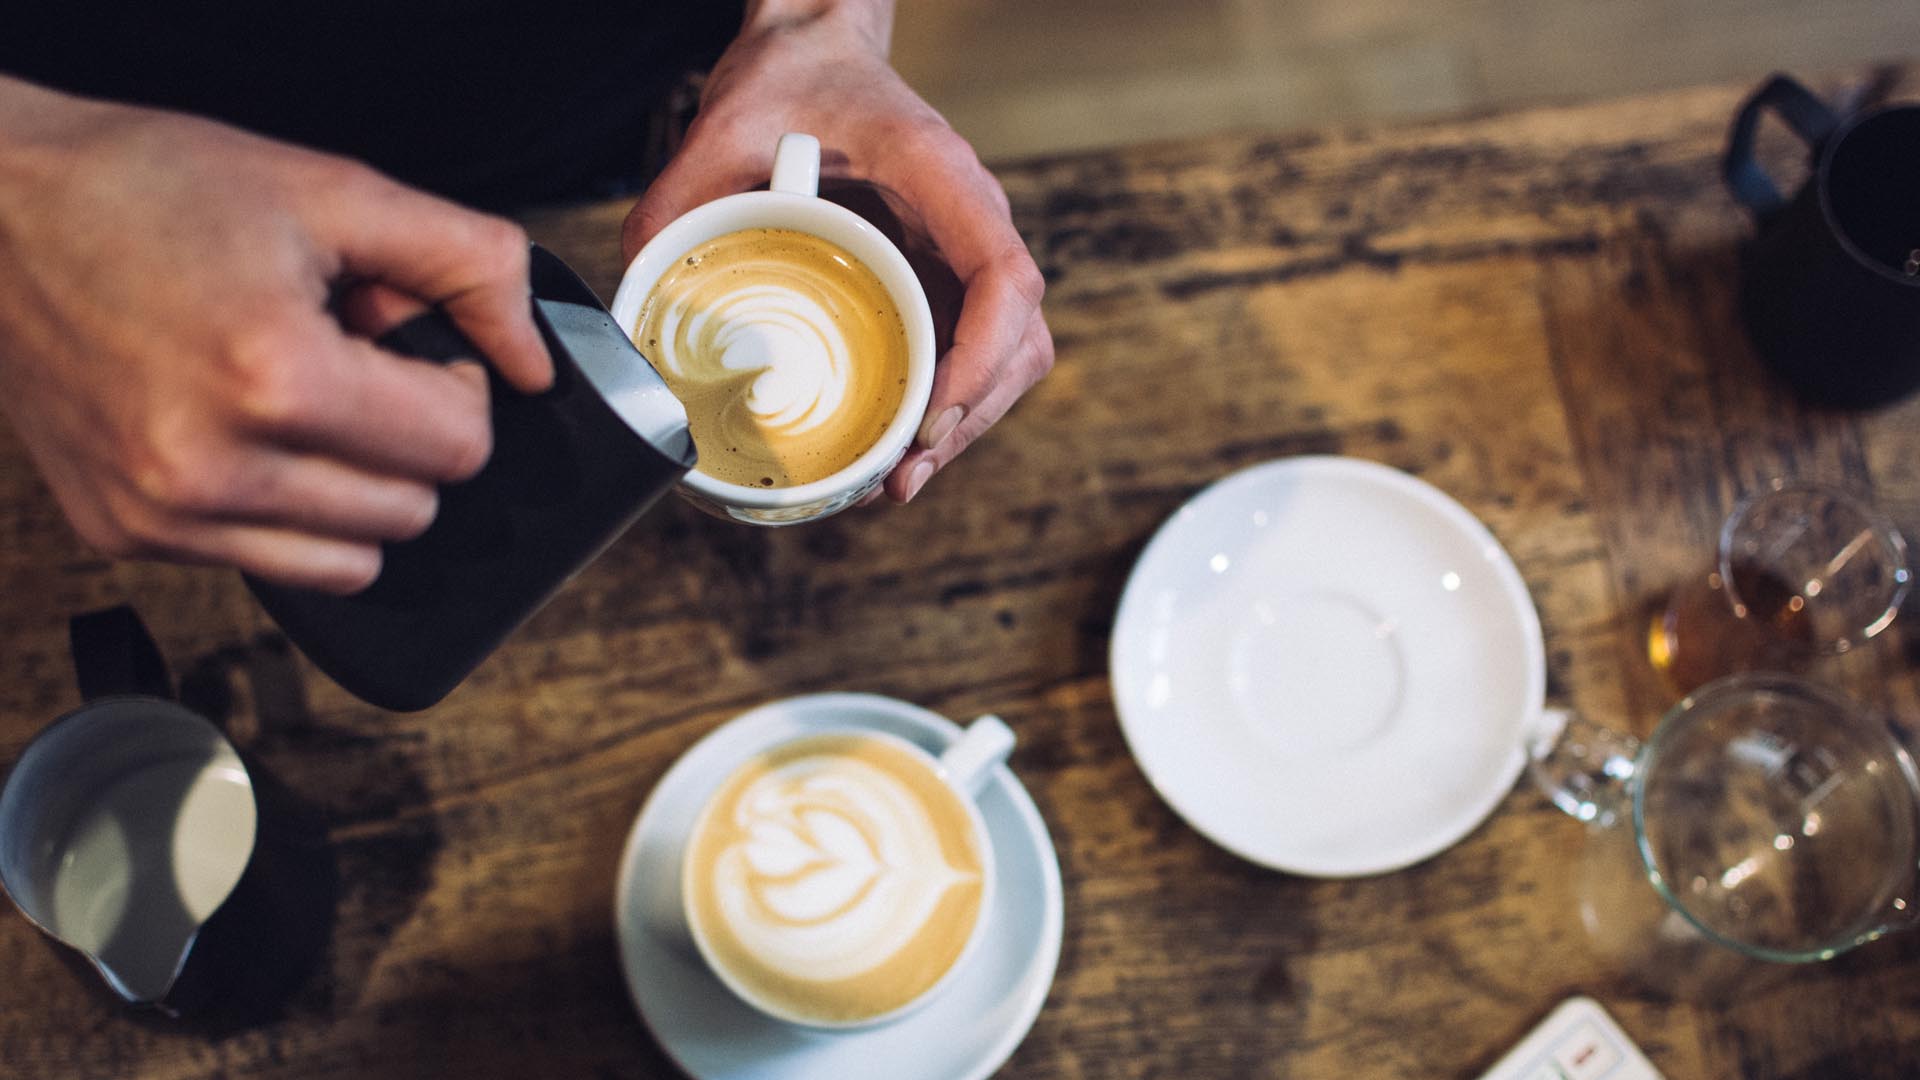 7. Coffee to go: In vielen Cafés ist es möglich, eigene Kaffeebecher füllen zu lassen. Einfach einmal nachfragen und auf Pappbecher mit Plastikdeckel verzichten.